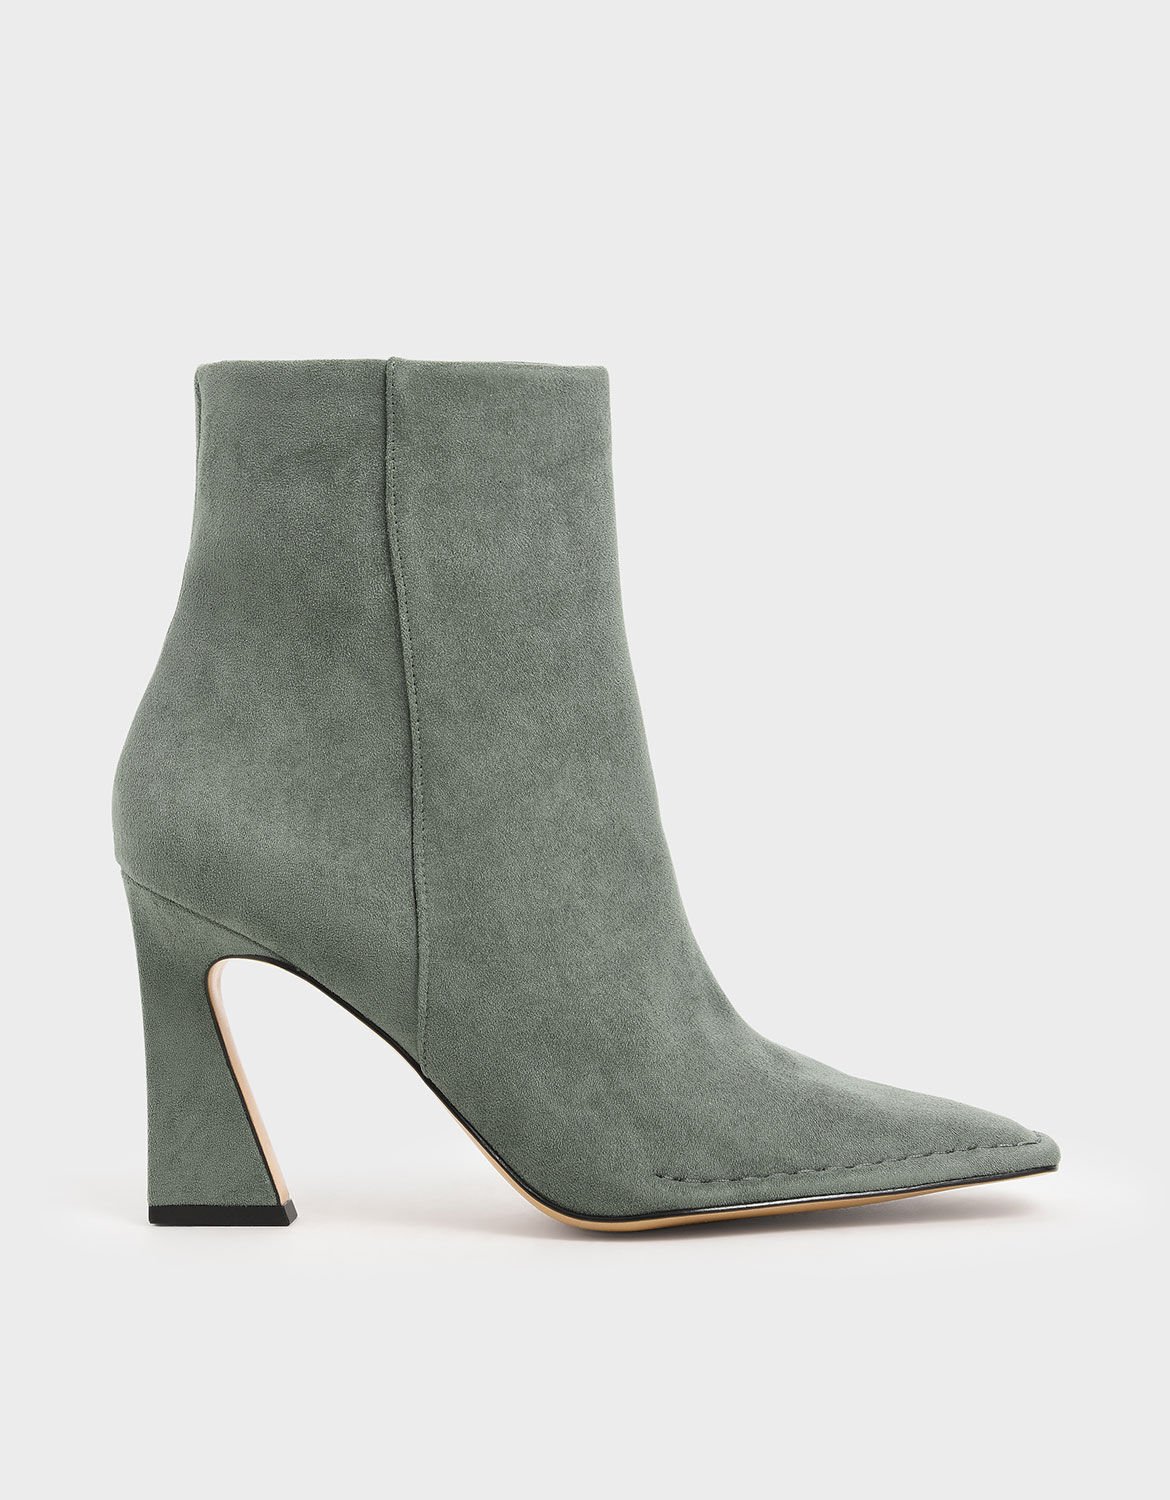 sage green high heels